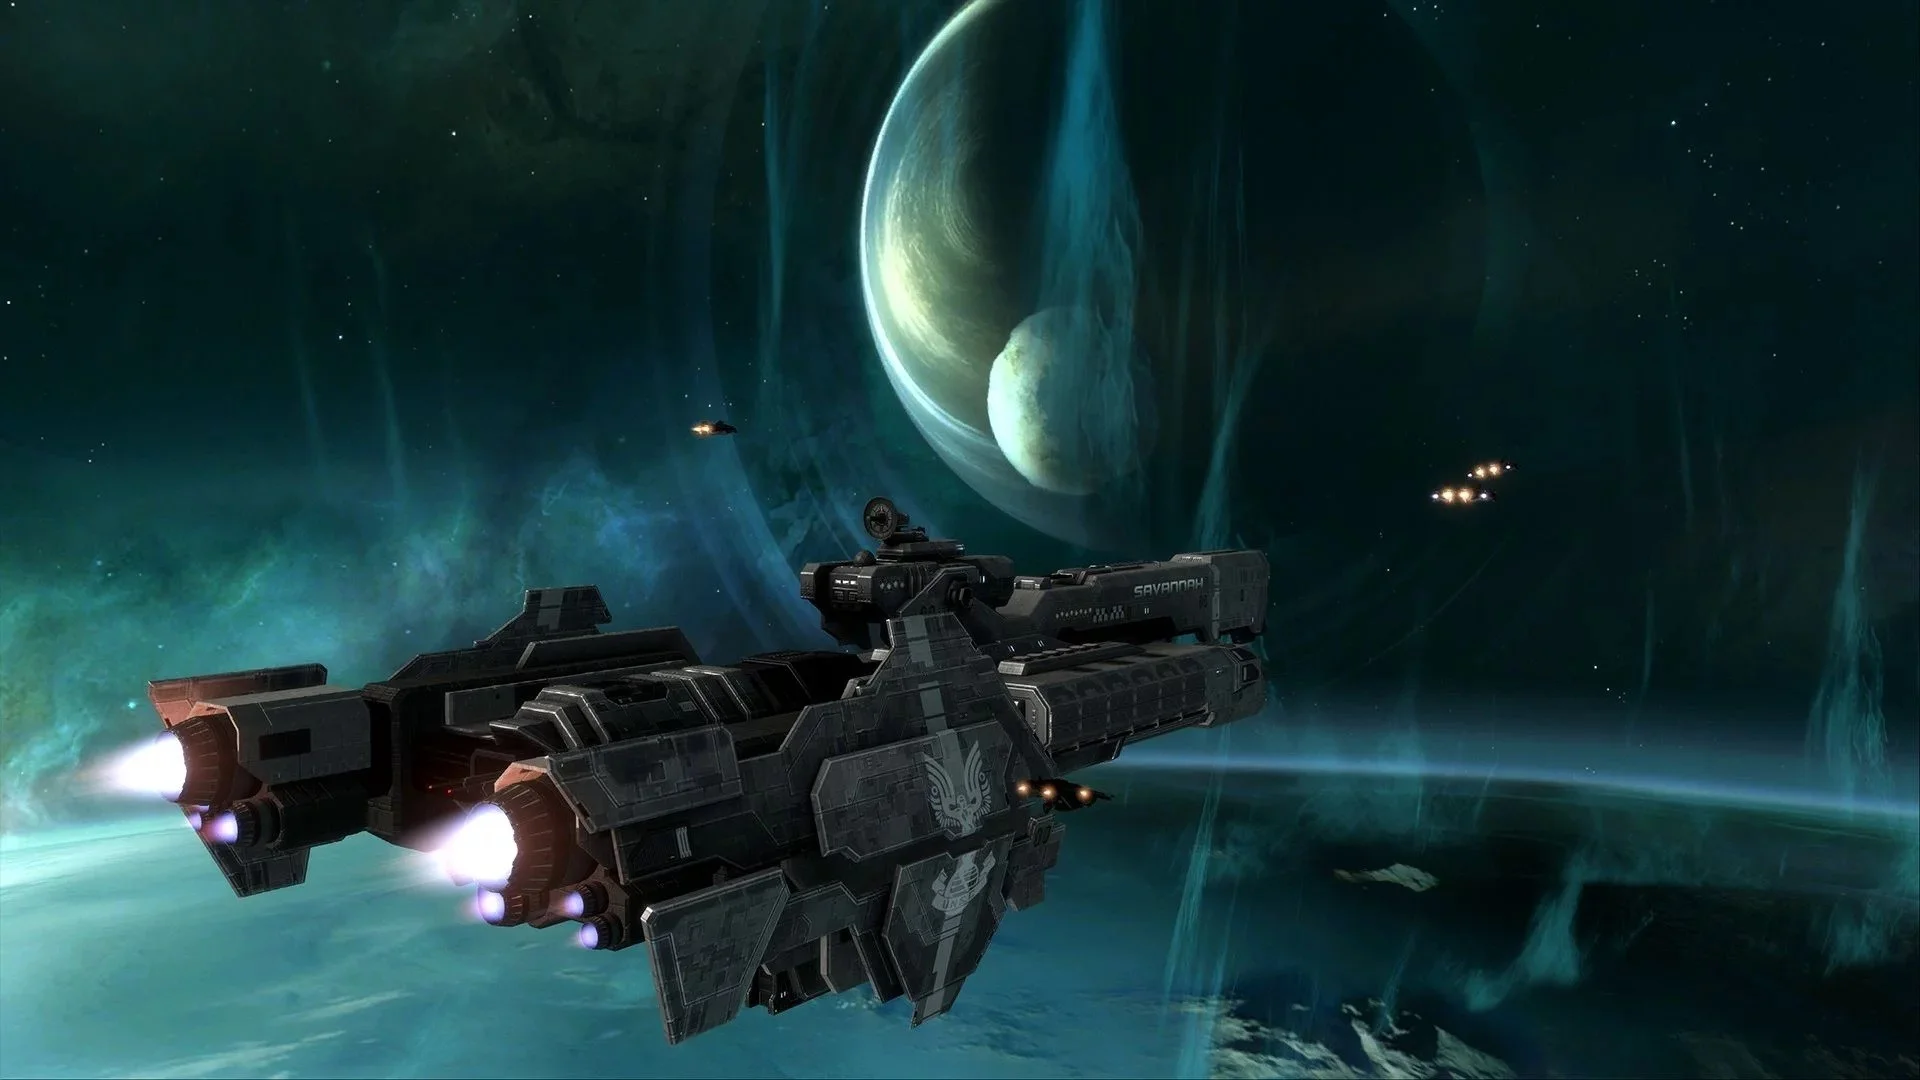 Halo: Reach, лучшая часть серии, вышла на PC. Ответы на главные вопросы - фото 4